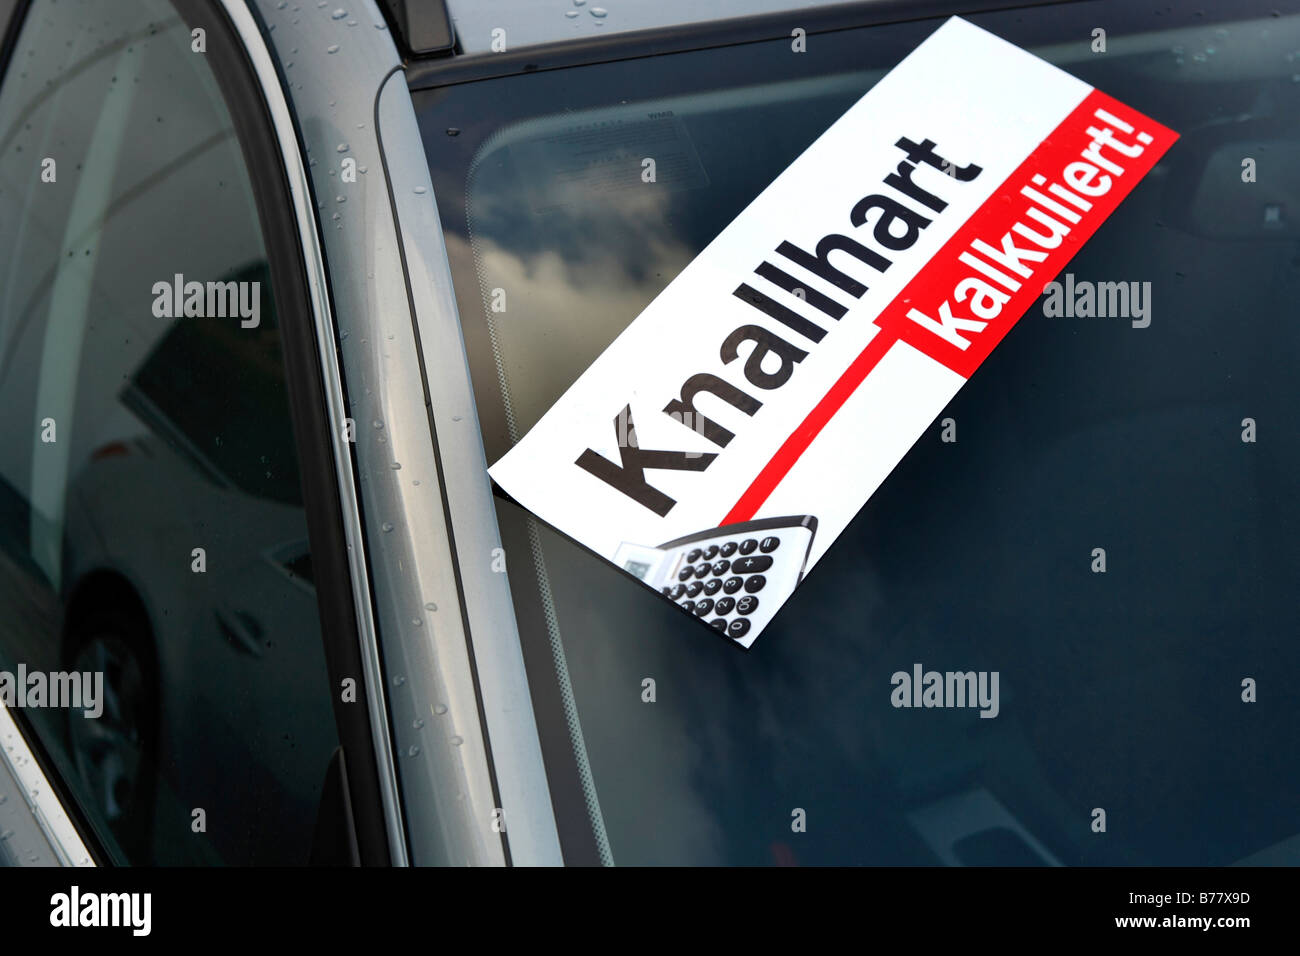 Sticker, Knallhart kalkuliert, tough calculated discounts, on a car Stock Photo